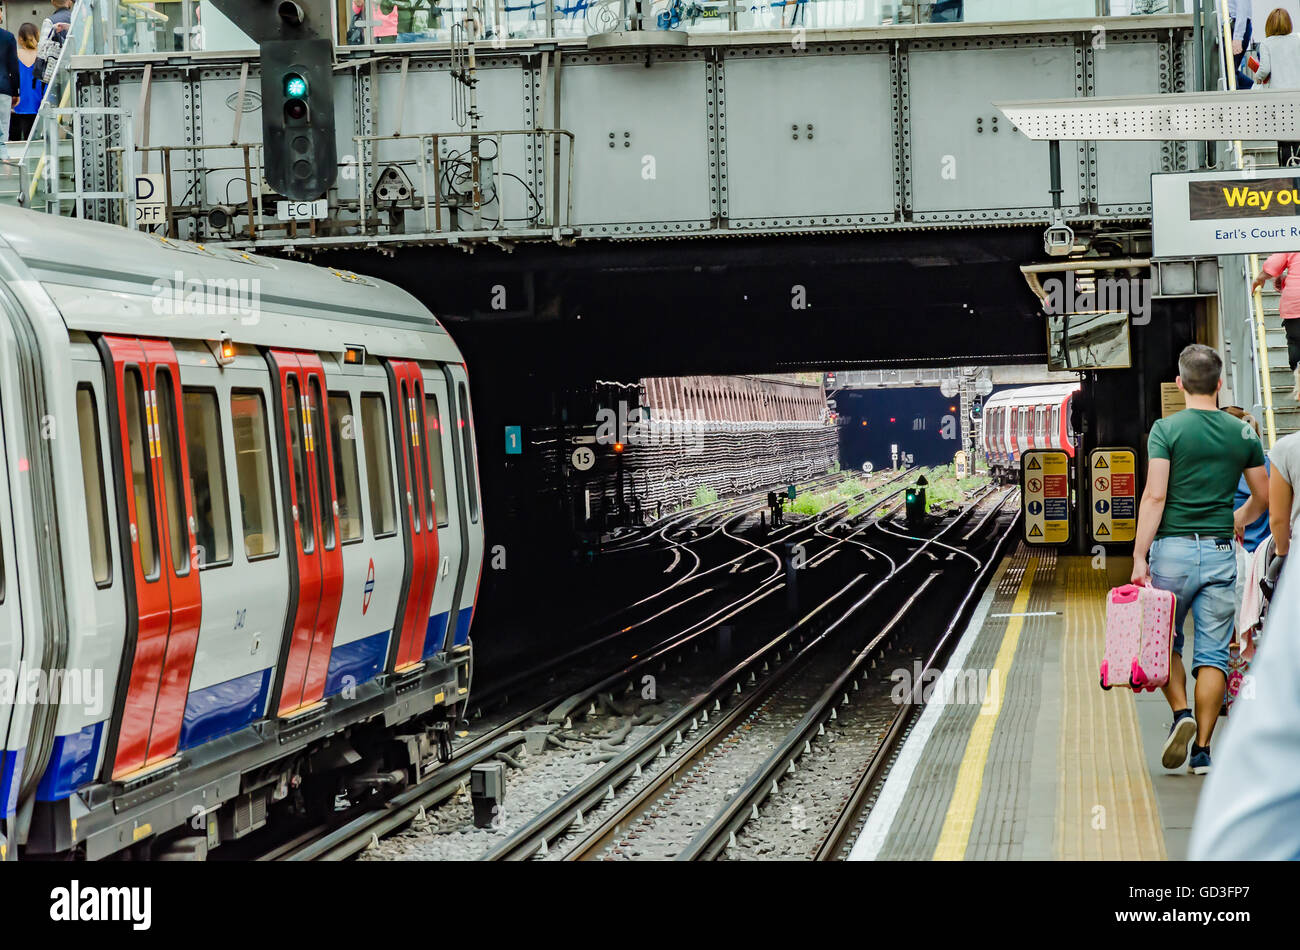 Un train se trouve à Earl's Court Station de métro de Londres en attente de départ. Banque D'Images